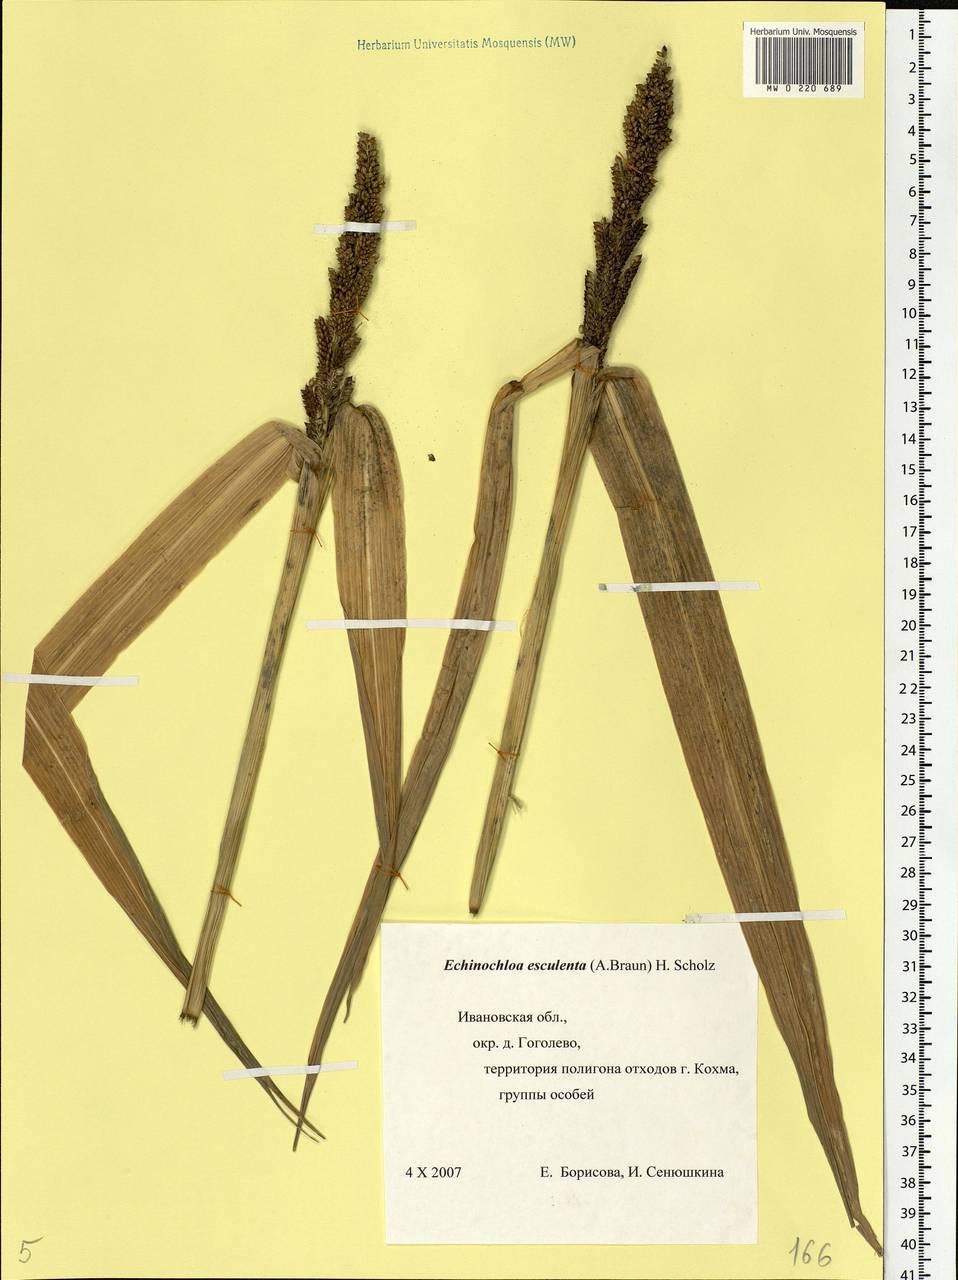 Echinochloa crus-galli subsp. utilis (Ohwi & Yabuno) T.Koyama, Восточная Европа, Центральный лесной район (E5) (Россия)